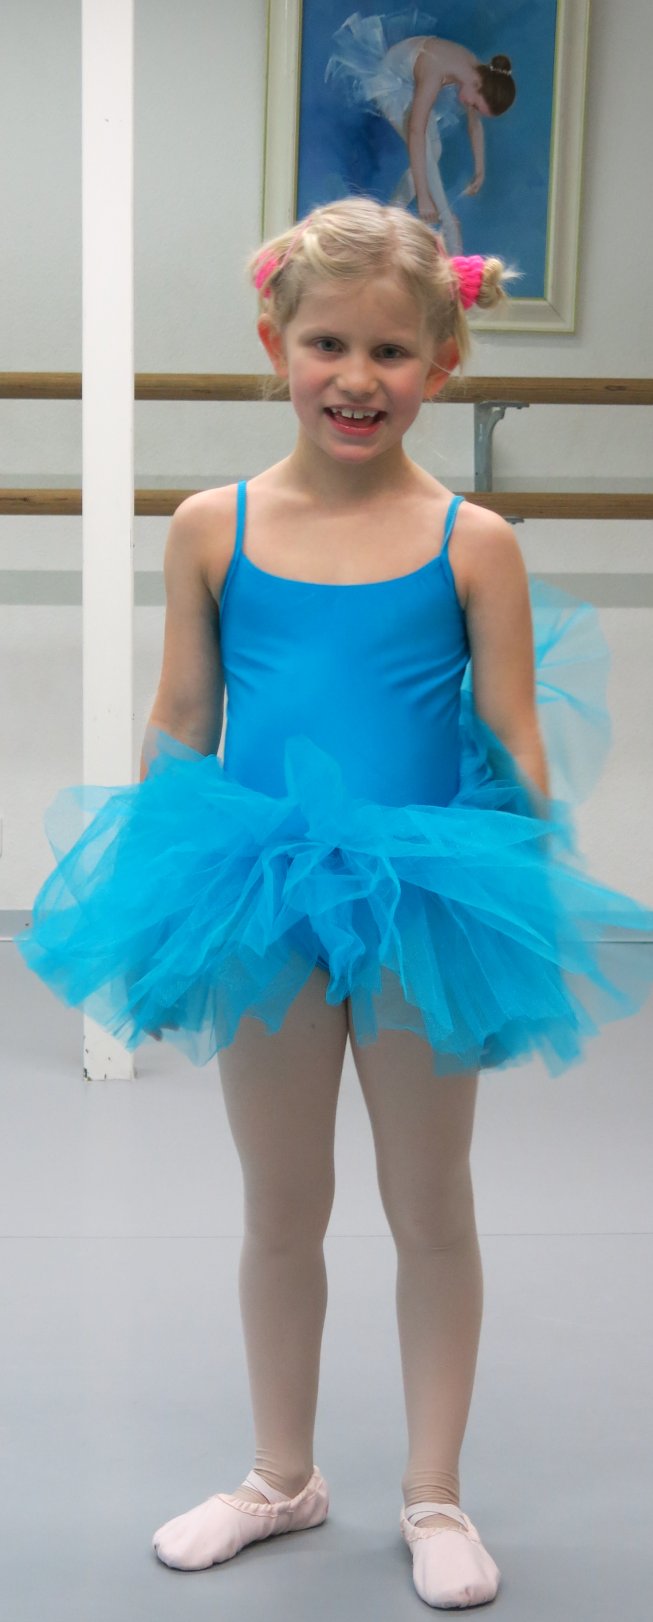 Frieda im Ballett